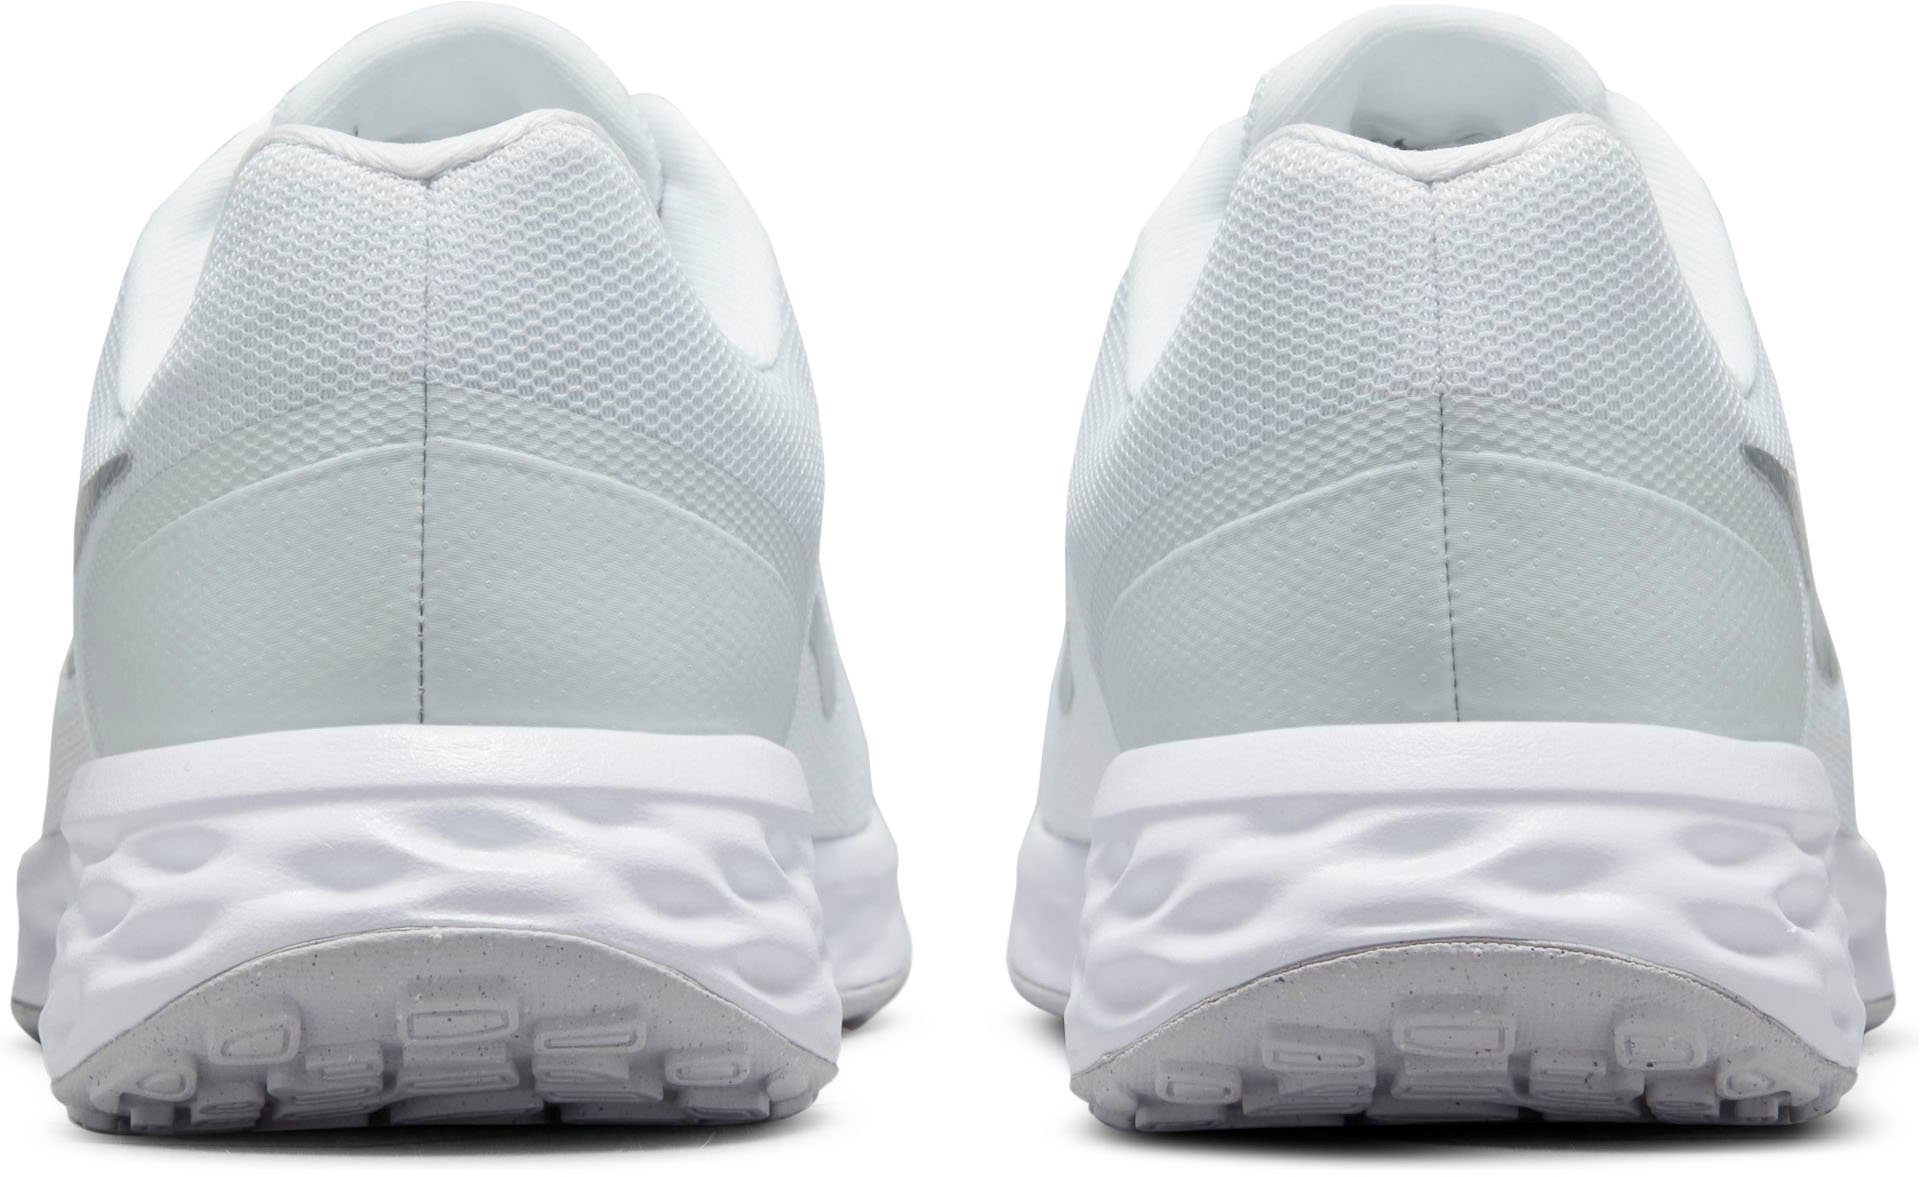 NEXT NATURE Nike Laufschuh weiß-silberfarben REVOLUTION 6